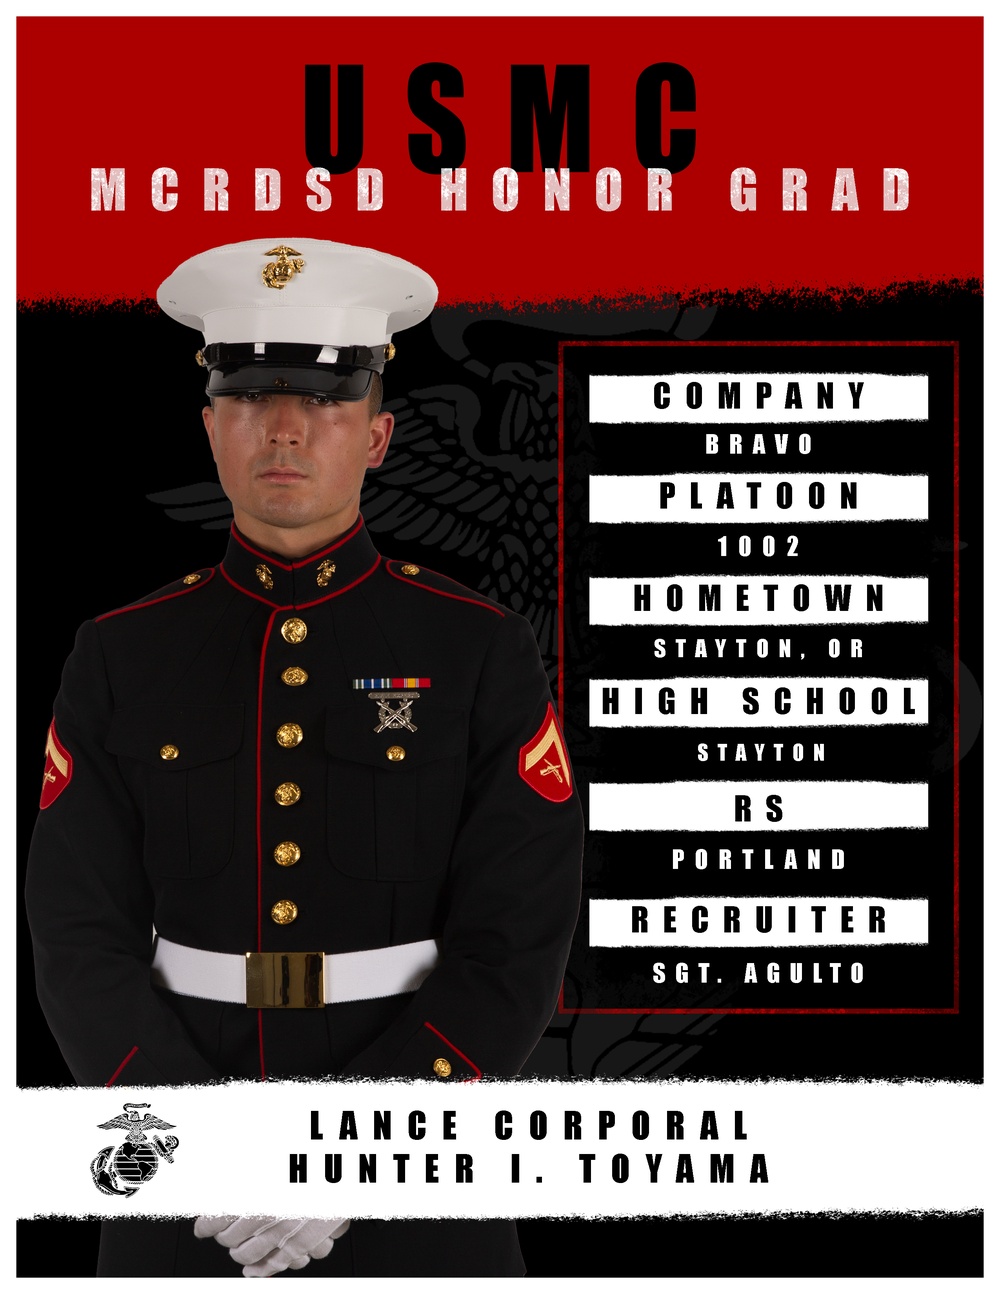 Bravo Company Honor Graduate